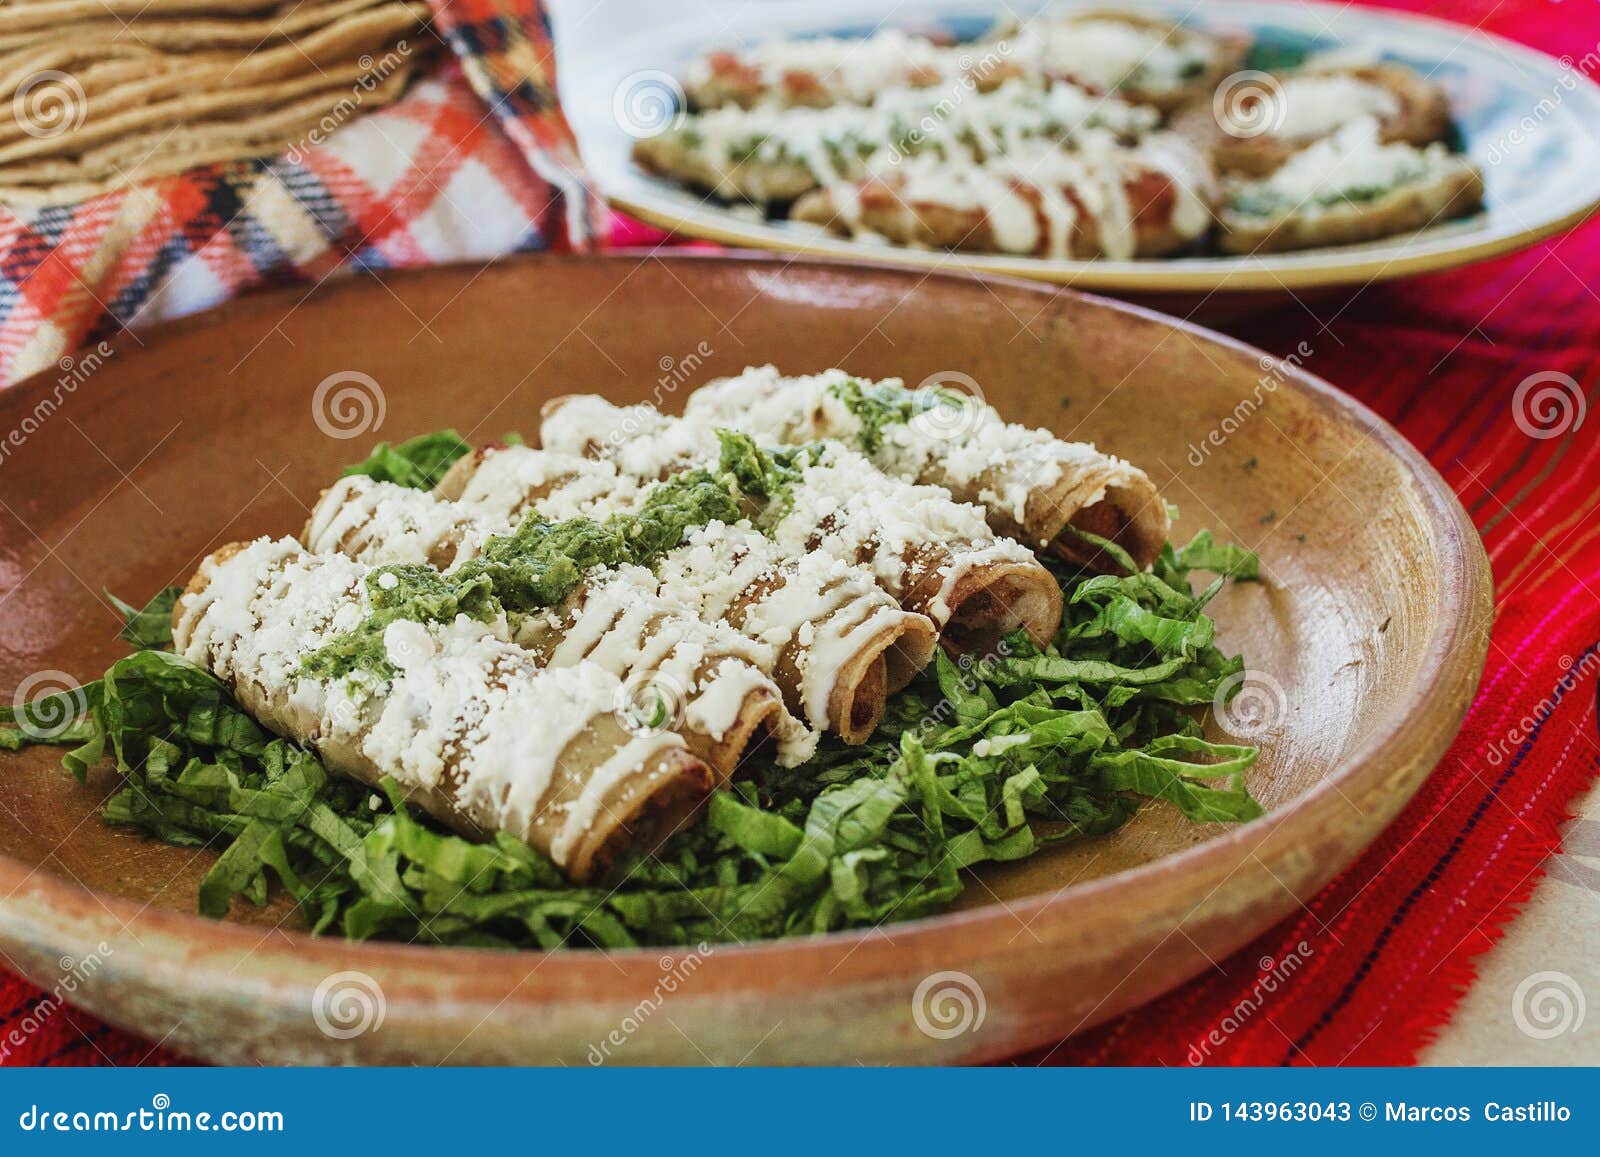 tacos dorados, flautas de pollo, chicken tacos and spicy salsa homemade mexican food in mexico